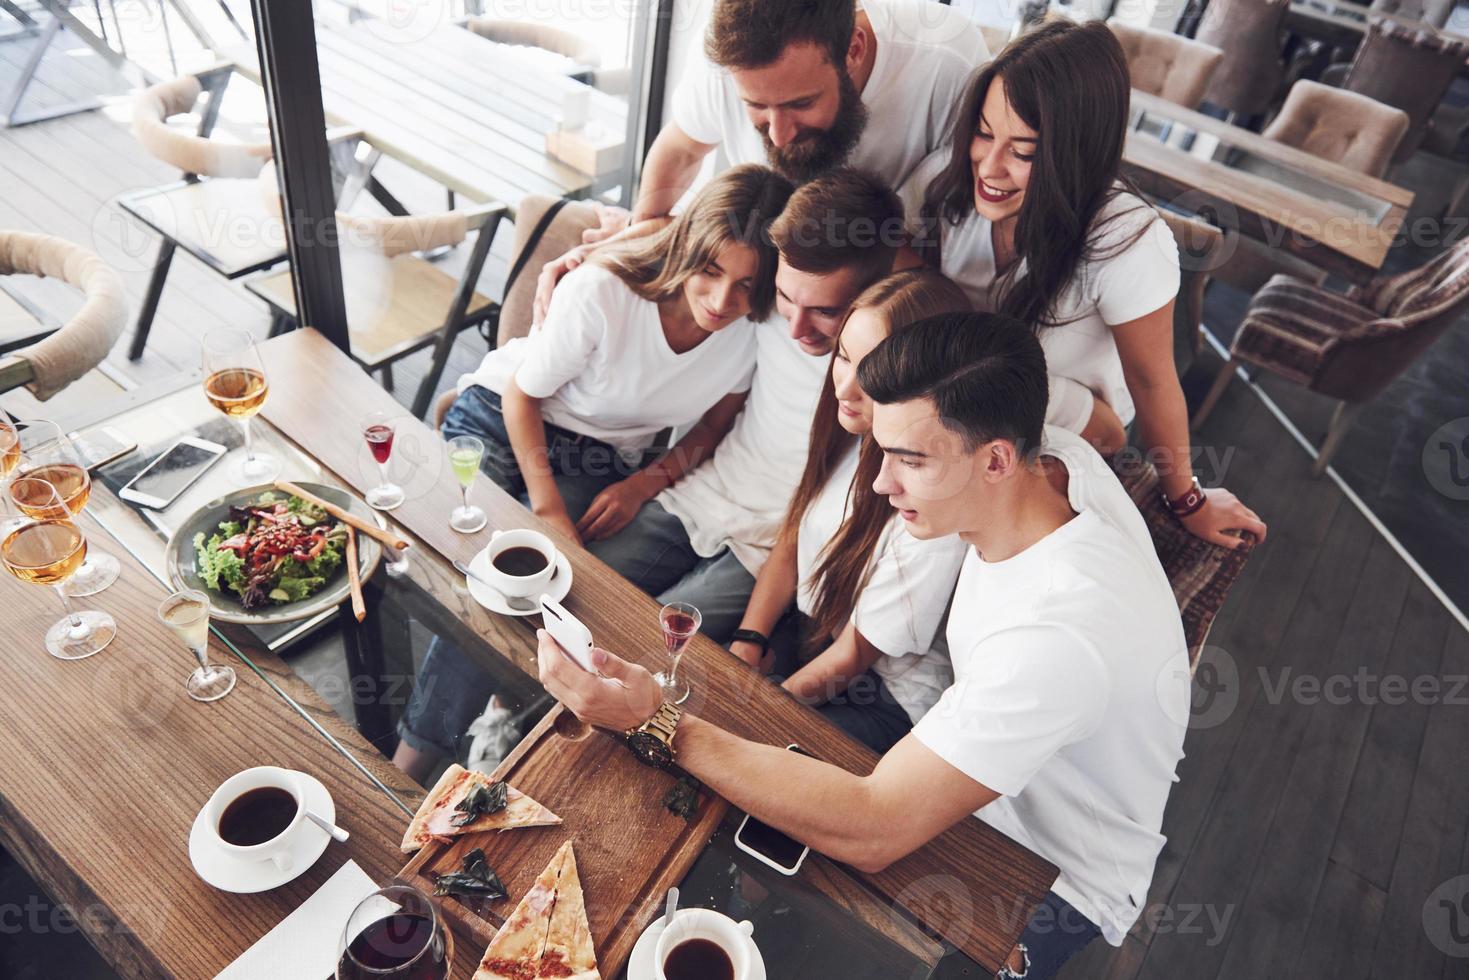 un groupe de personnes fait une photo de selfie dans un café. les meilleurs amis se sont réunis à une table pour manger des pizzas et chanter diverses boissons